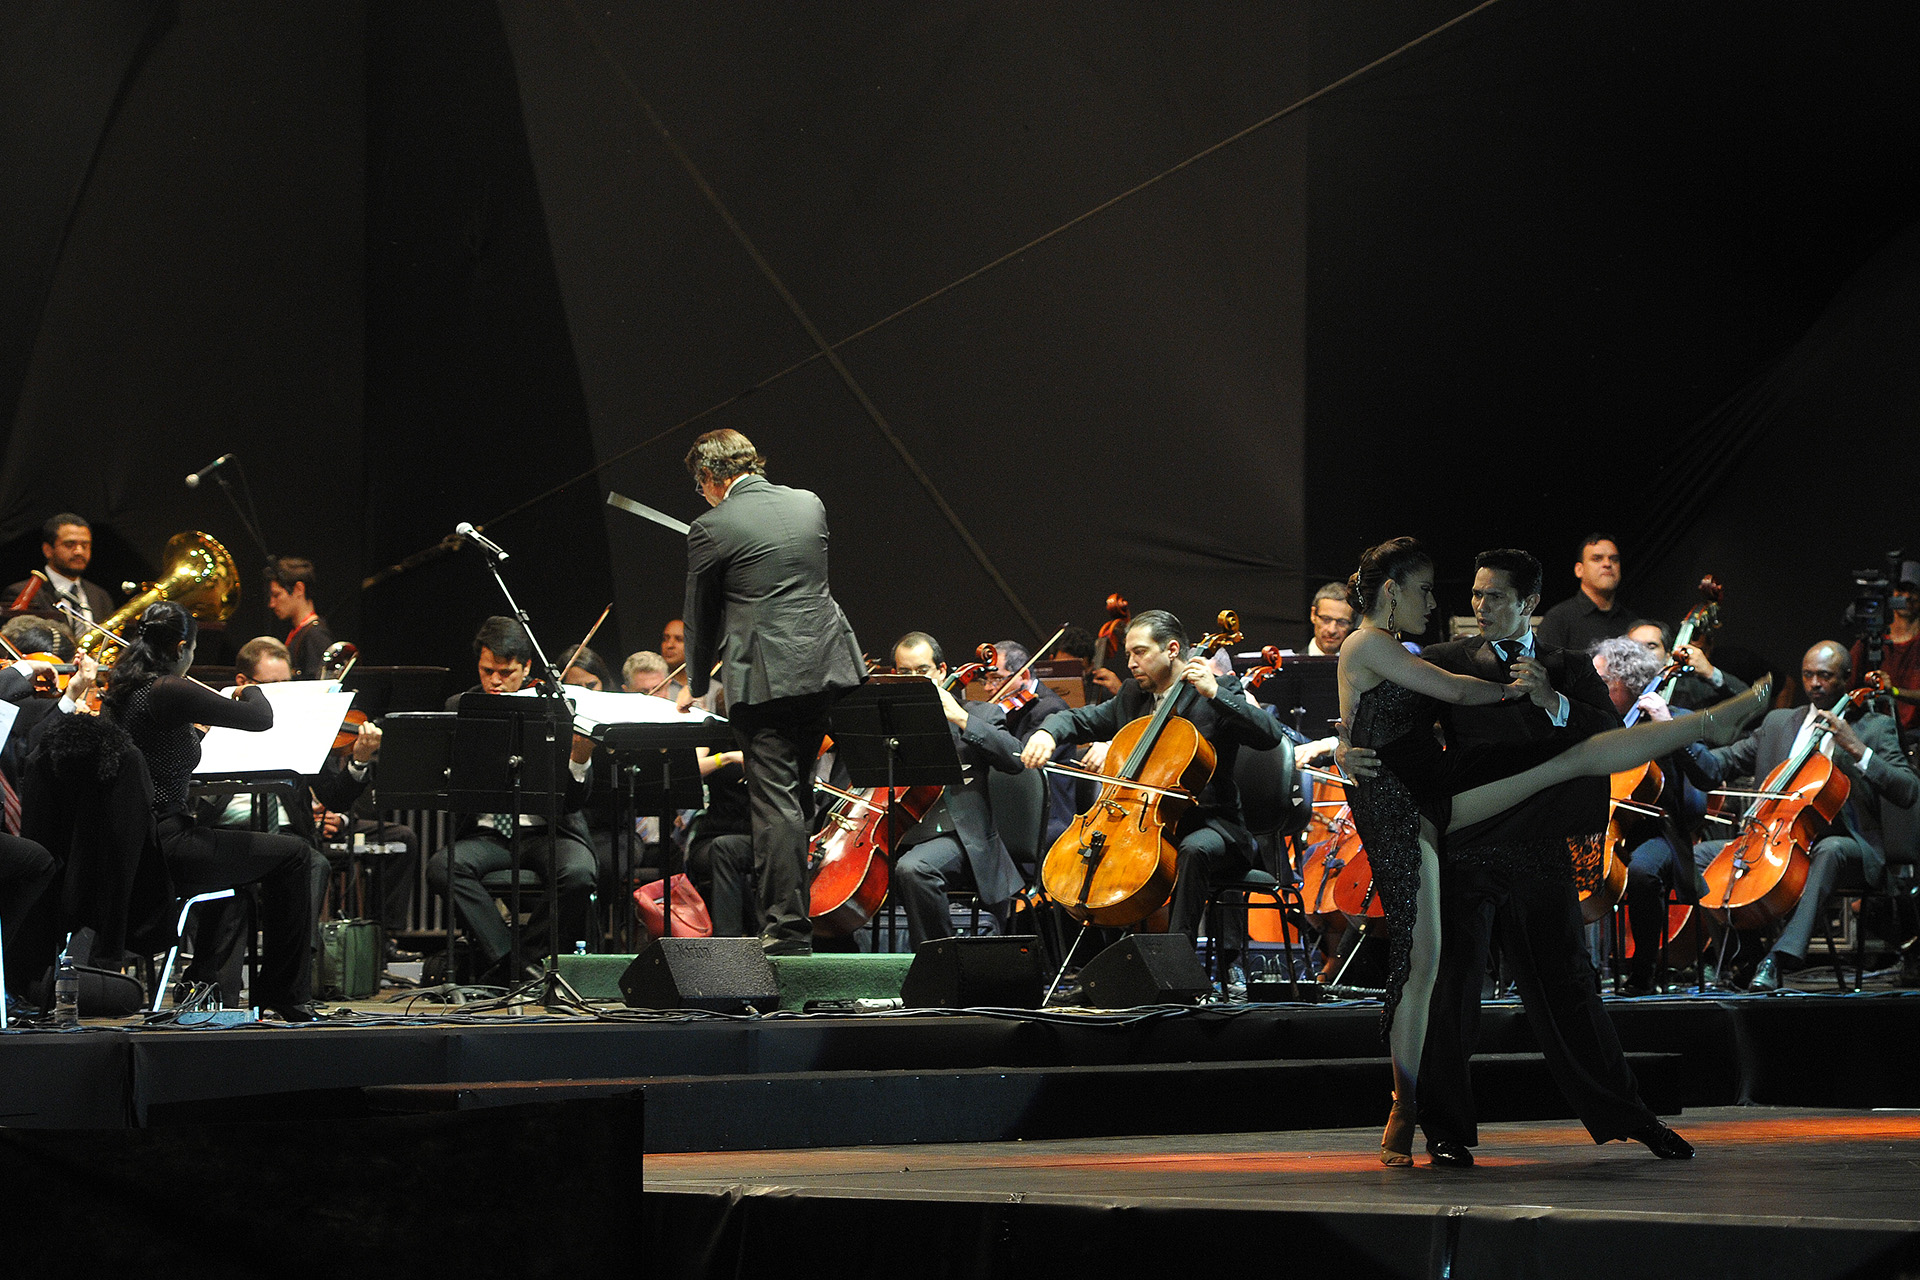 A Orquestra Sinfônica do Teatro Nacional Cláudio Santoro se apresentou na noite deste sábado (30) para um público de 5 mil pessoas. A noite contou com a performance de dançarinos de tango.